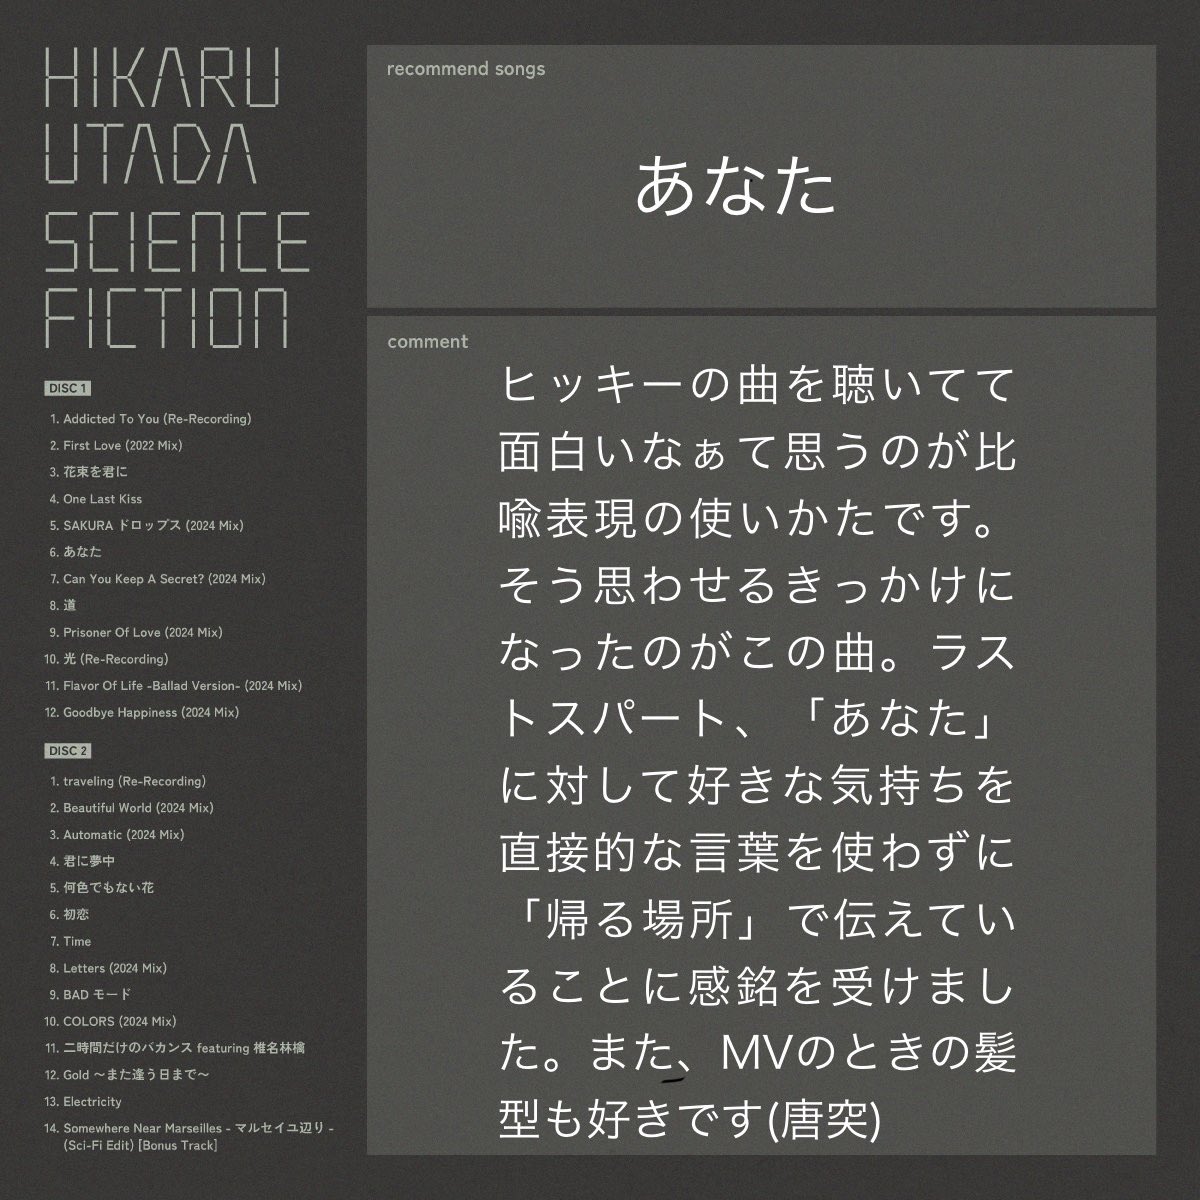 ベストアルバムが待ち遠しいです🫠
首がちょん切れそうなぐらい長くなってます🦒🦒
#HikaruUtada25th
#HikaruUtada25